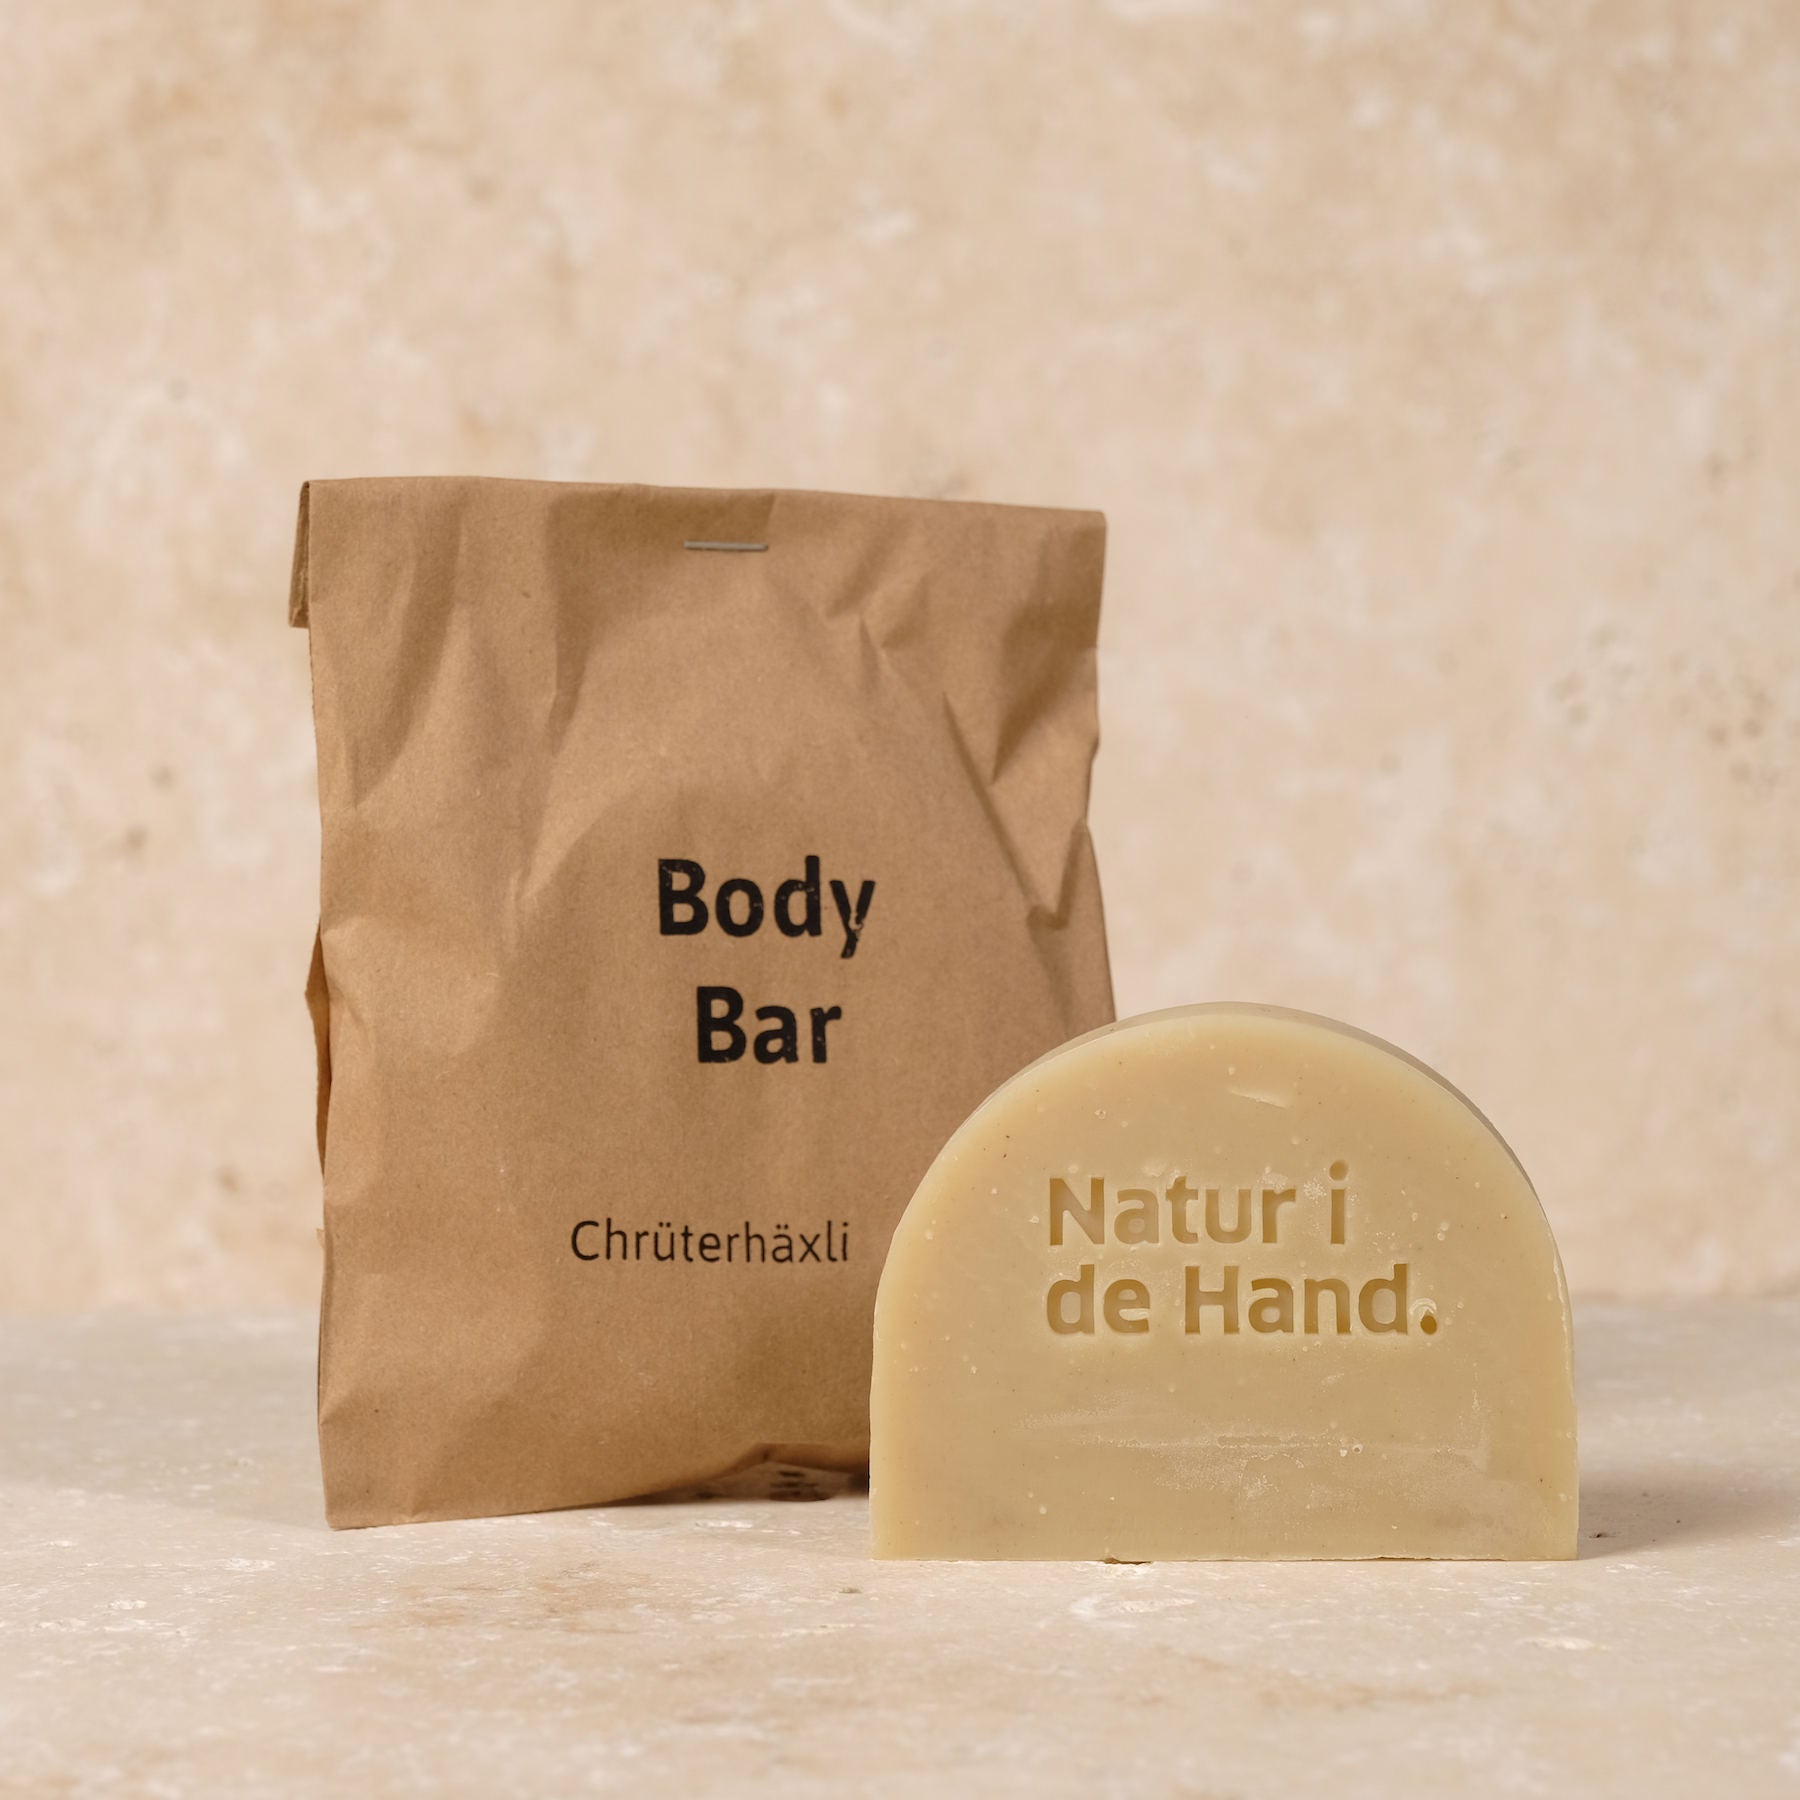 Sapone per il corpo - Body Bar - Chrüterhäxli, specialmente per pelli sensibili, con olio di cumino nero, prodotto in Svizzera.